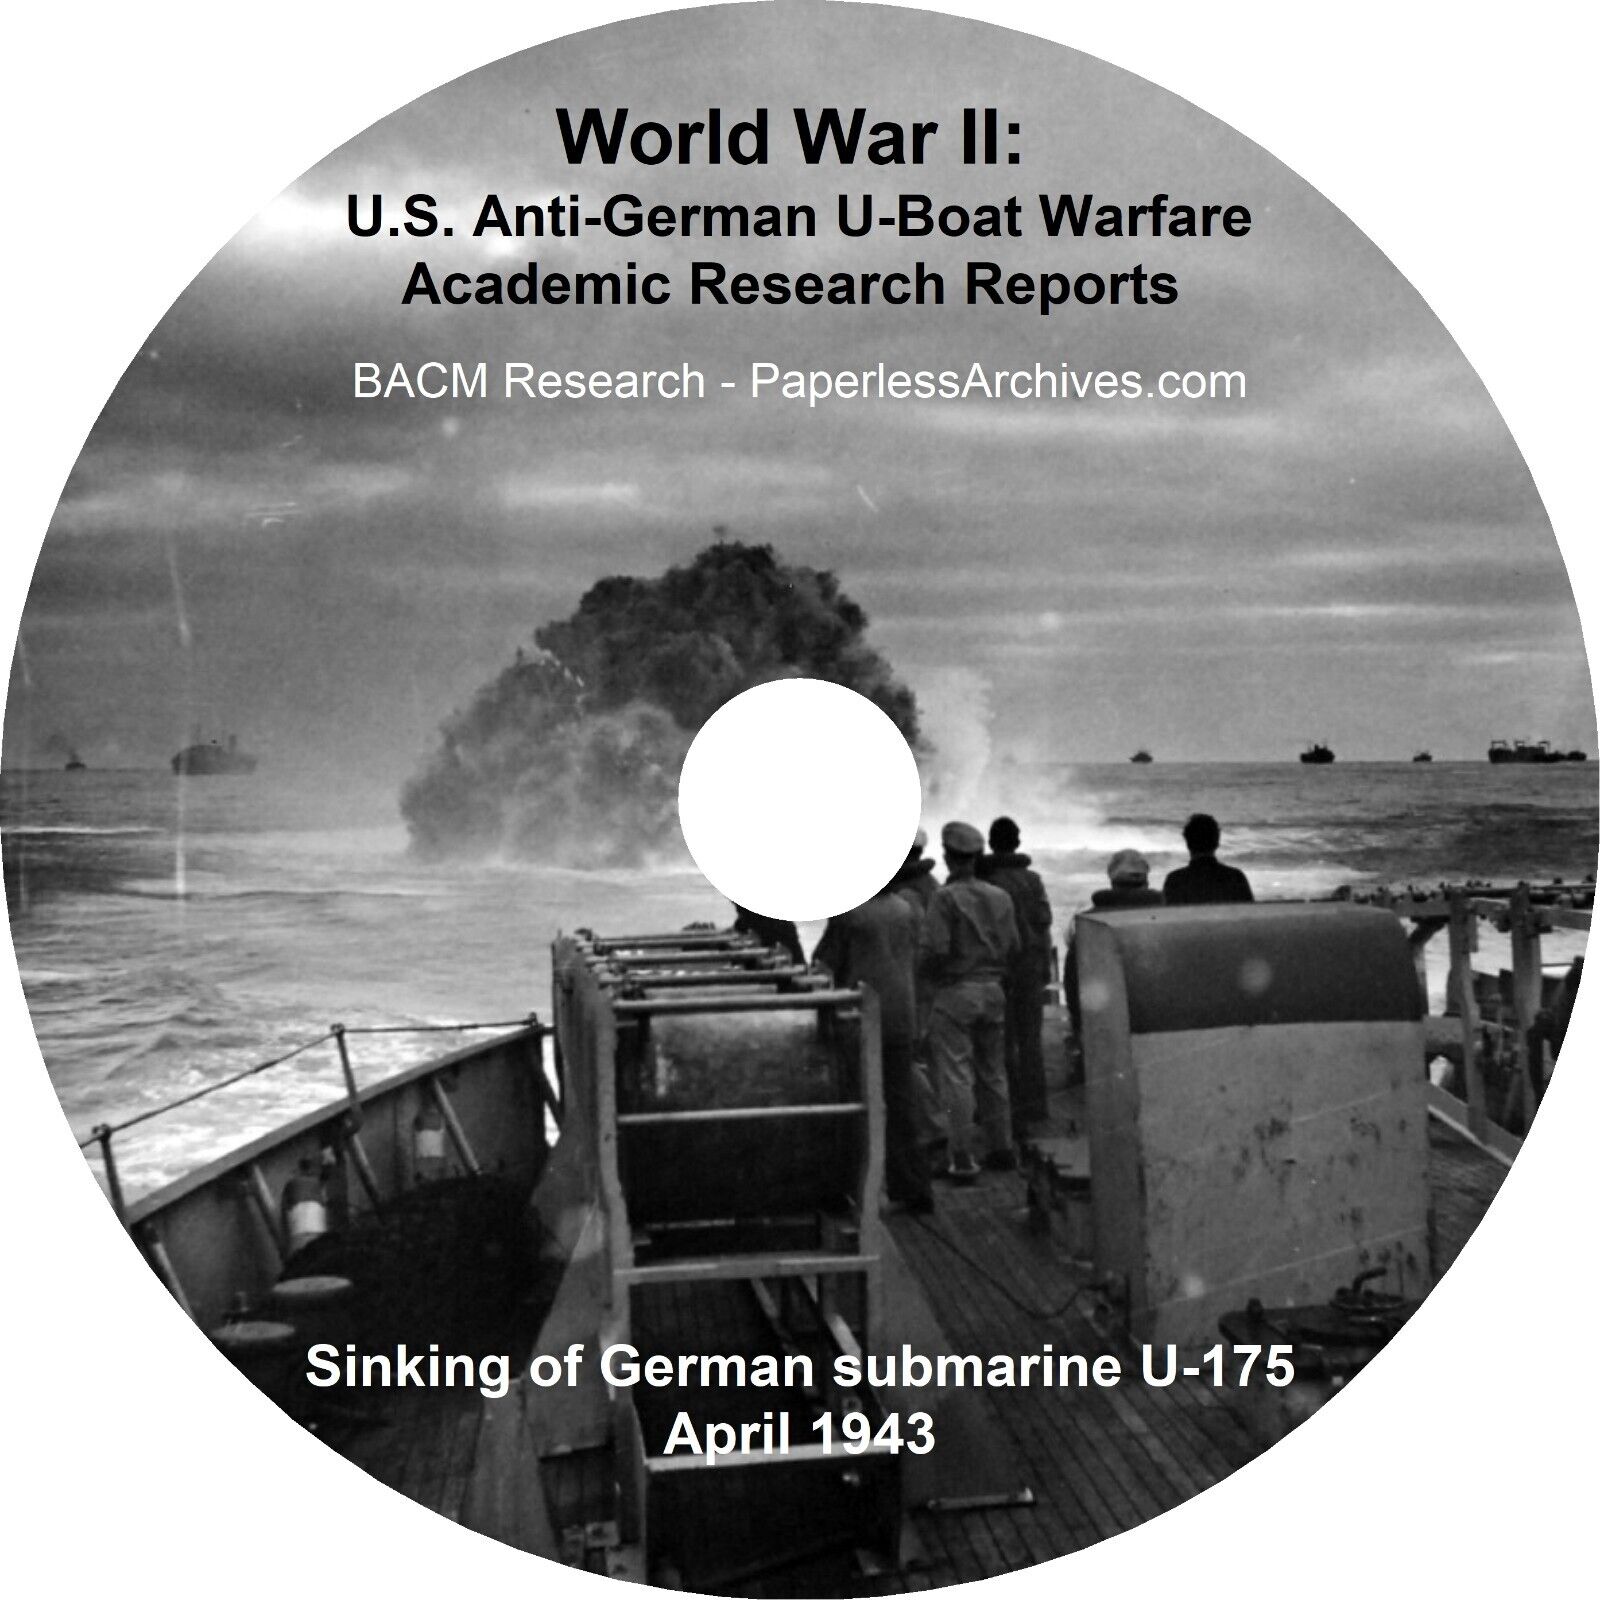 World War II: U.S. Anti-German U-Boat Warfare Academic Research Reports